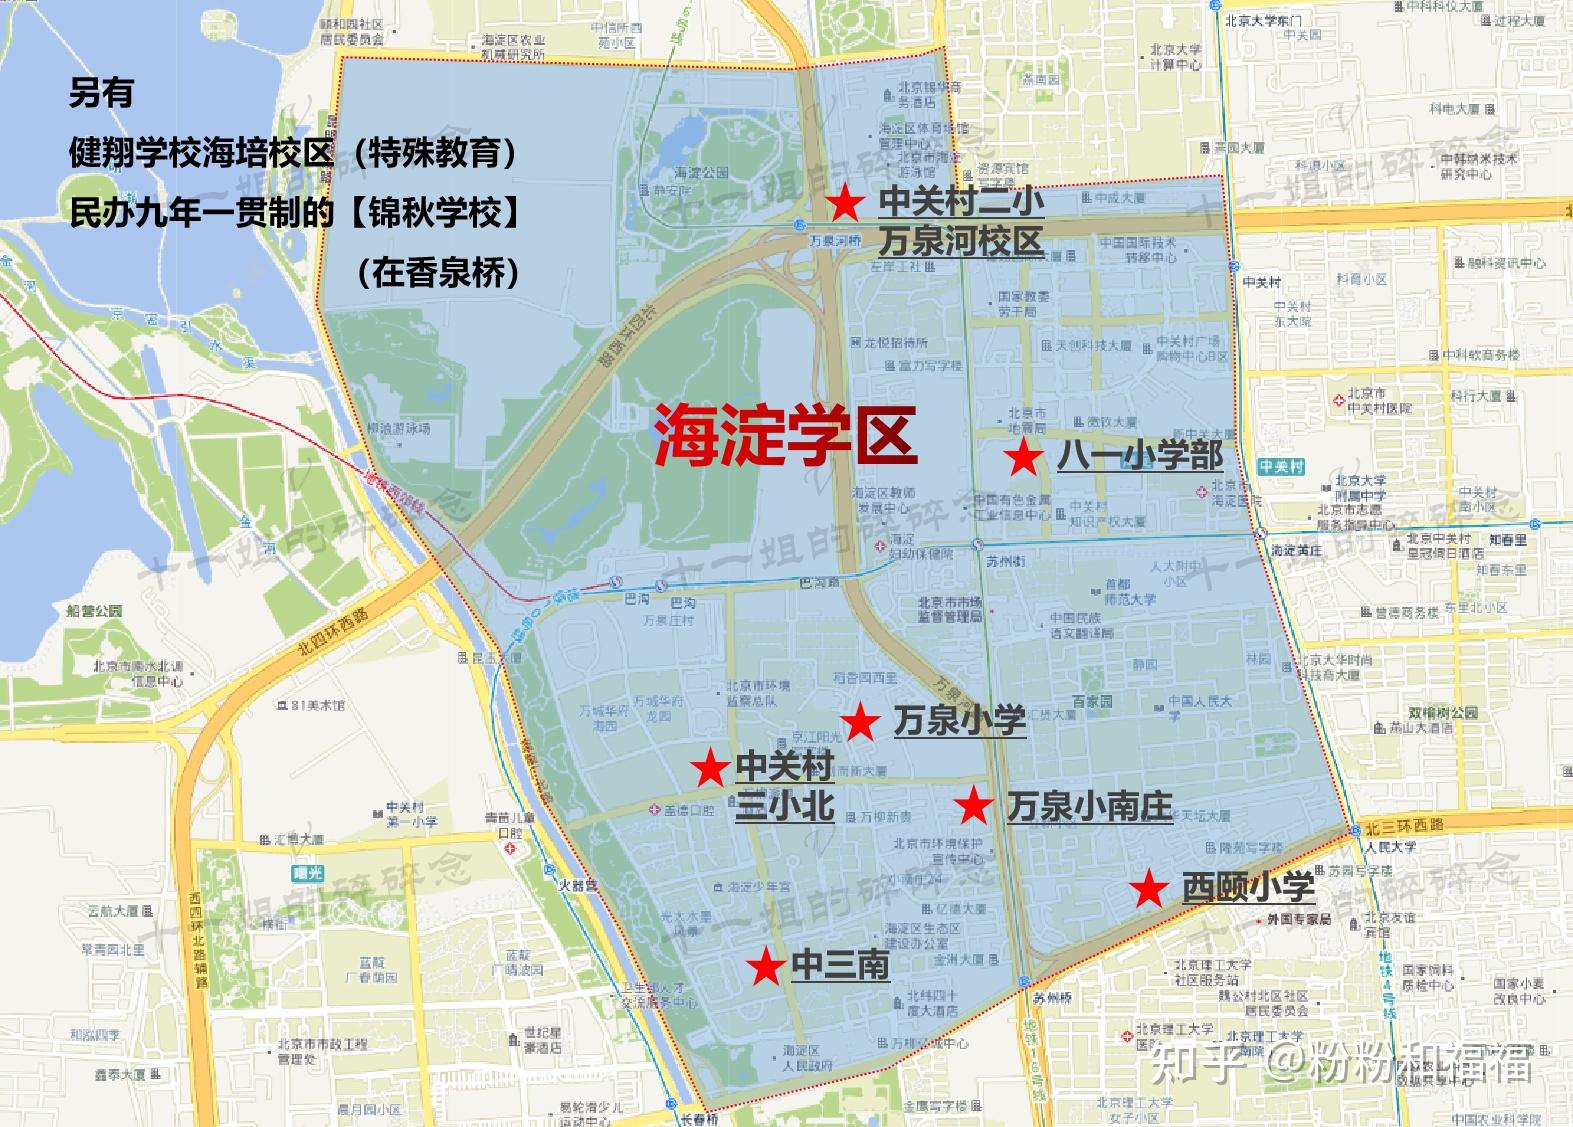 参观北京联想 公司 - 对标案例 - 对标考察网